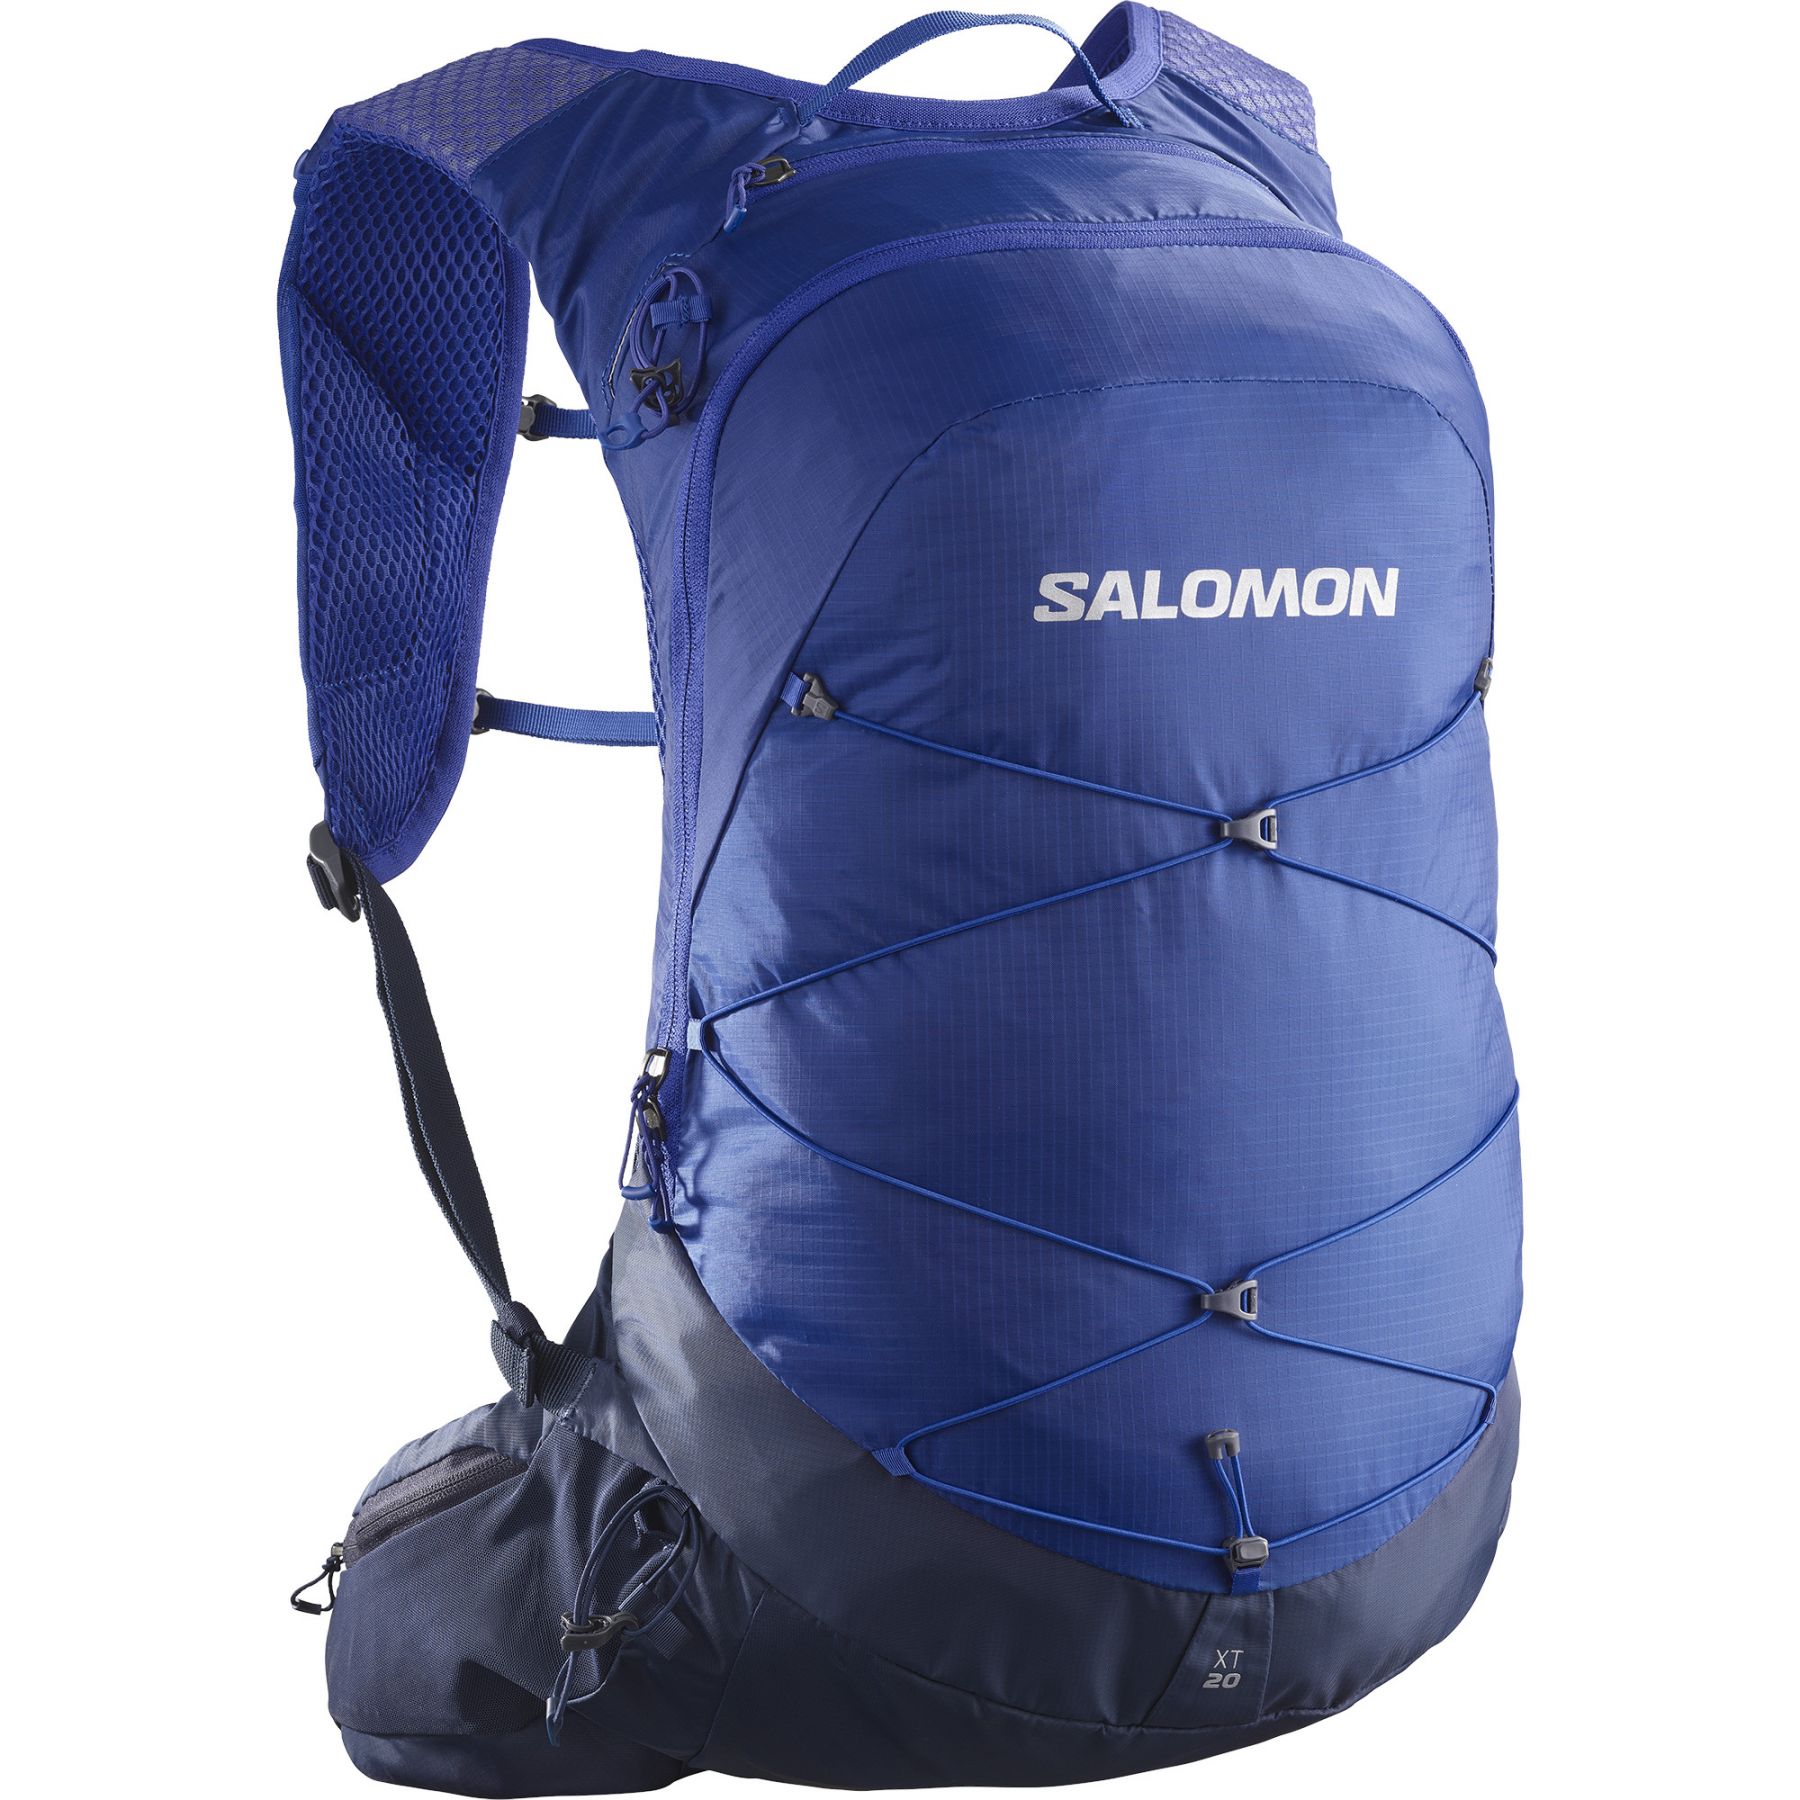 Billede af Salomon XT 20, rygsæk, blå